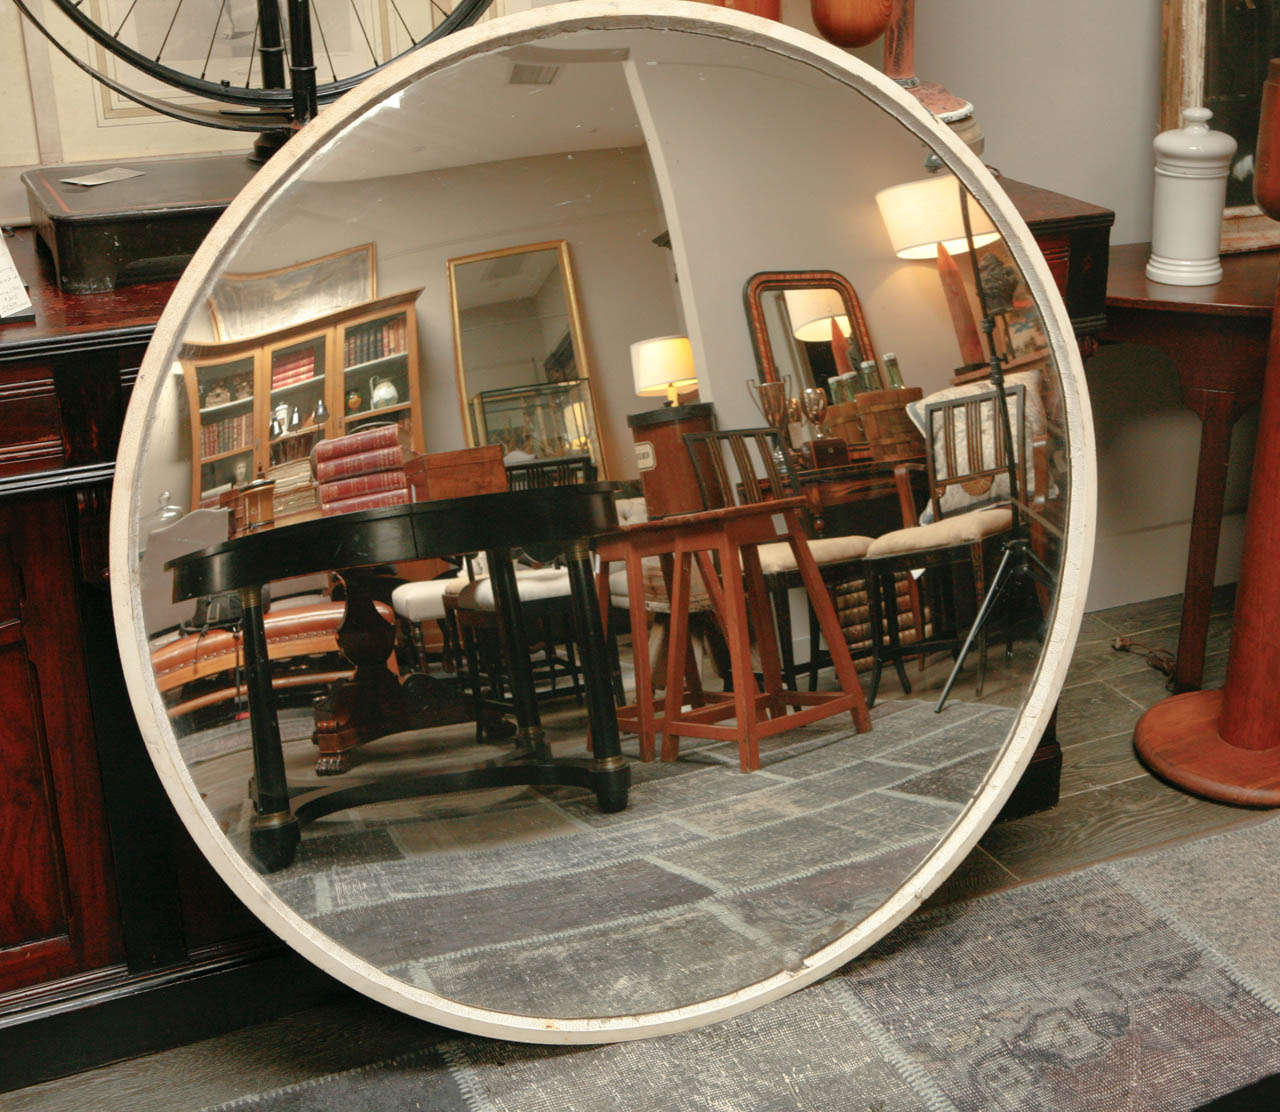 A Convex Mirror from Belgium
Circa, 1880